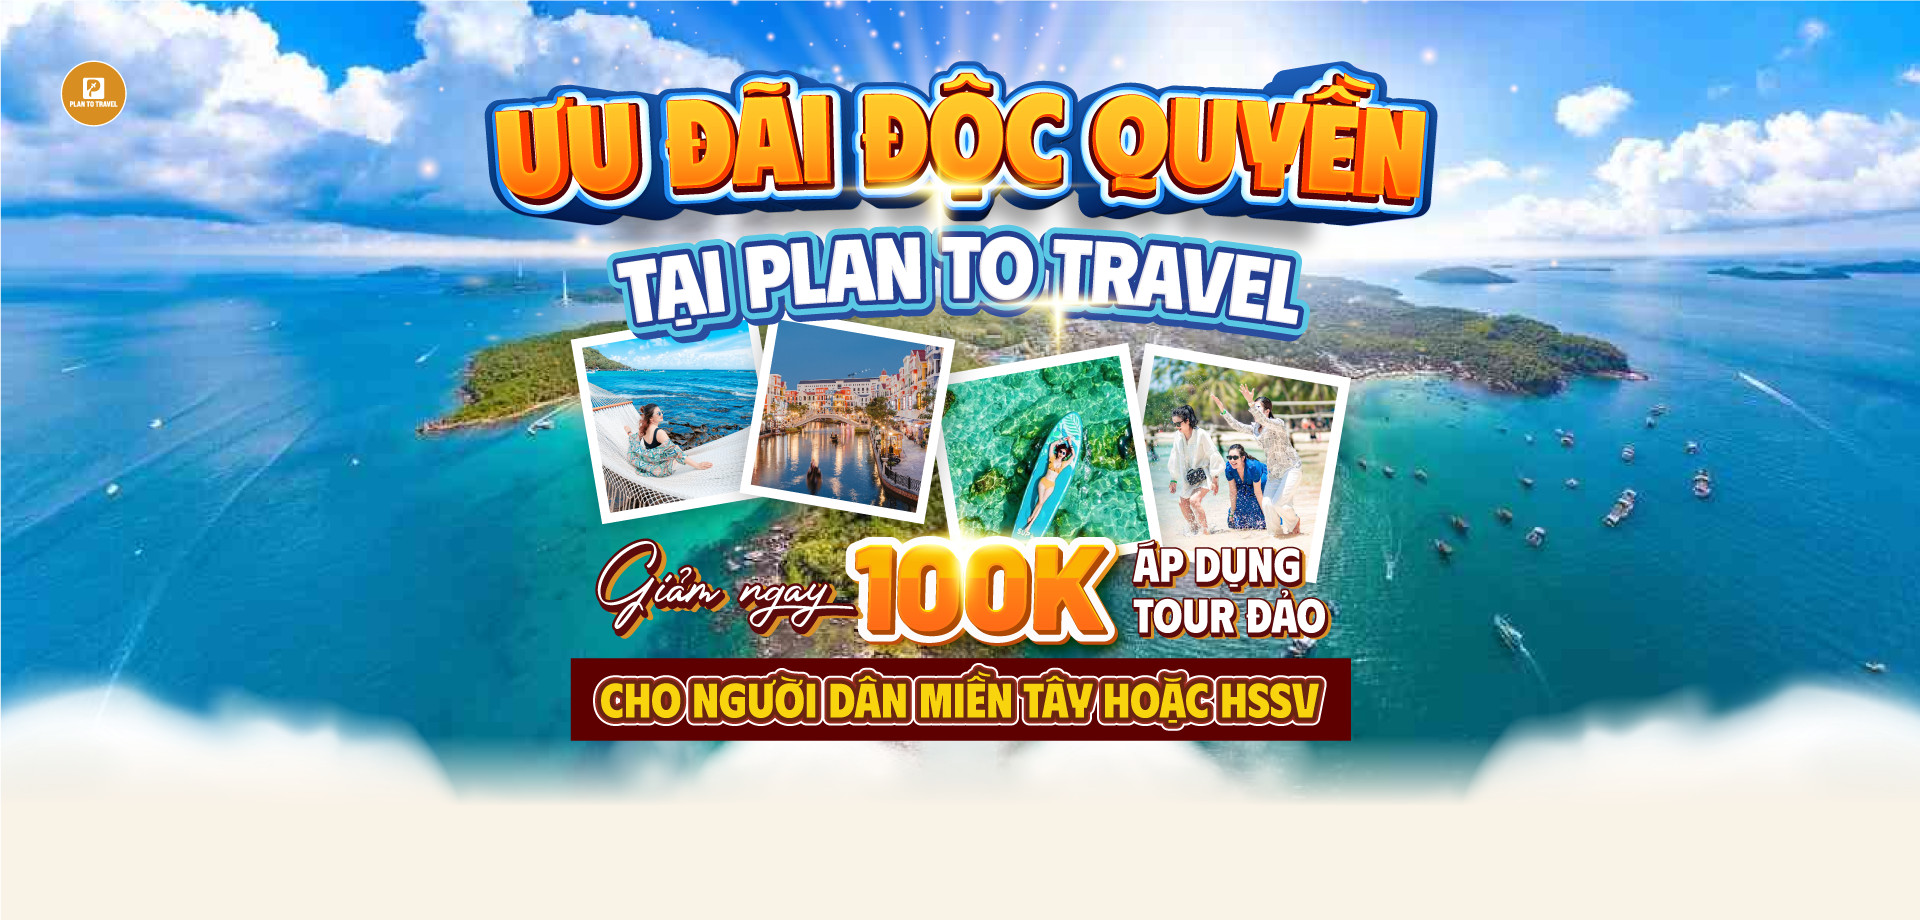 GIẢM NGAY 100K cho khách hàng đi tour đảo tại PLAN TO TRAVEL